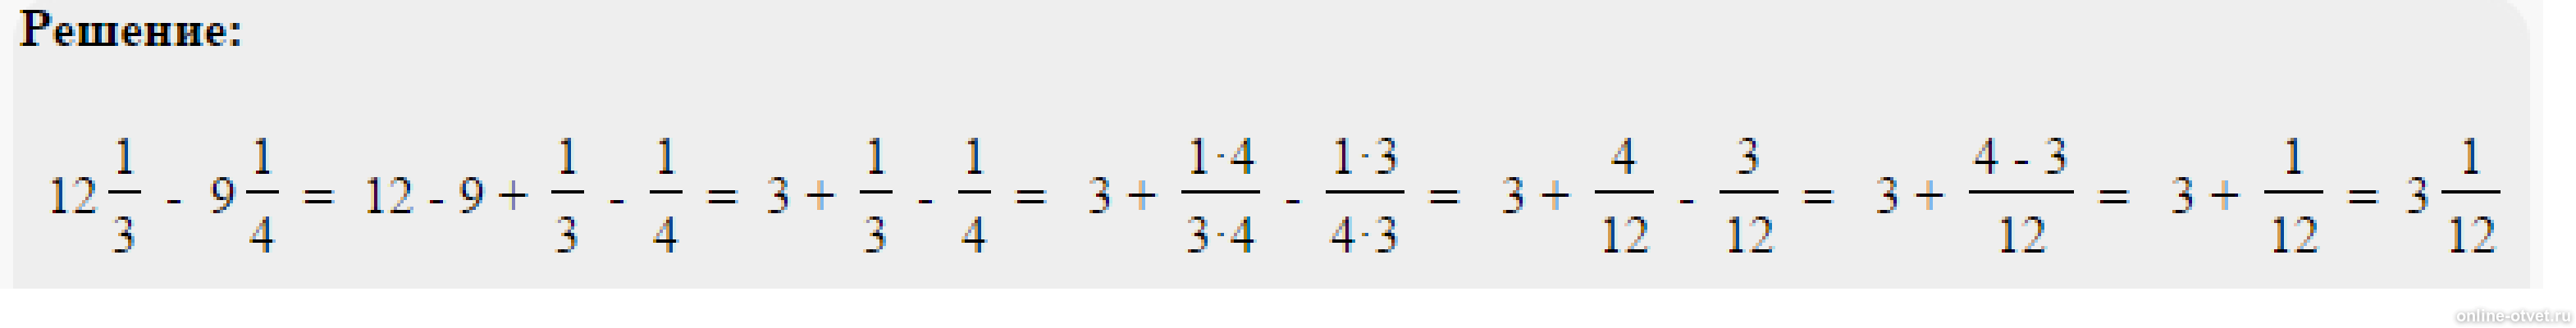 9.8 5 2. Решить пример одна целая одна пятая. Пример 4 целых3/8*2 целых 3/5*8/9. Решить пример 2 целых минус 1 целая 3/5. Минус 1 целая 3/8 минус 2 целых 5/12.